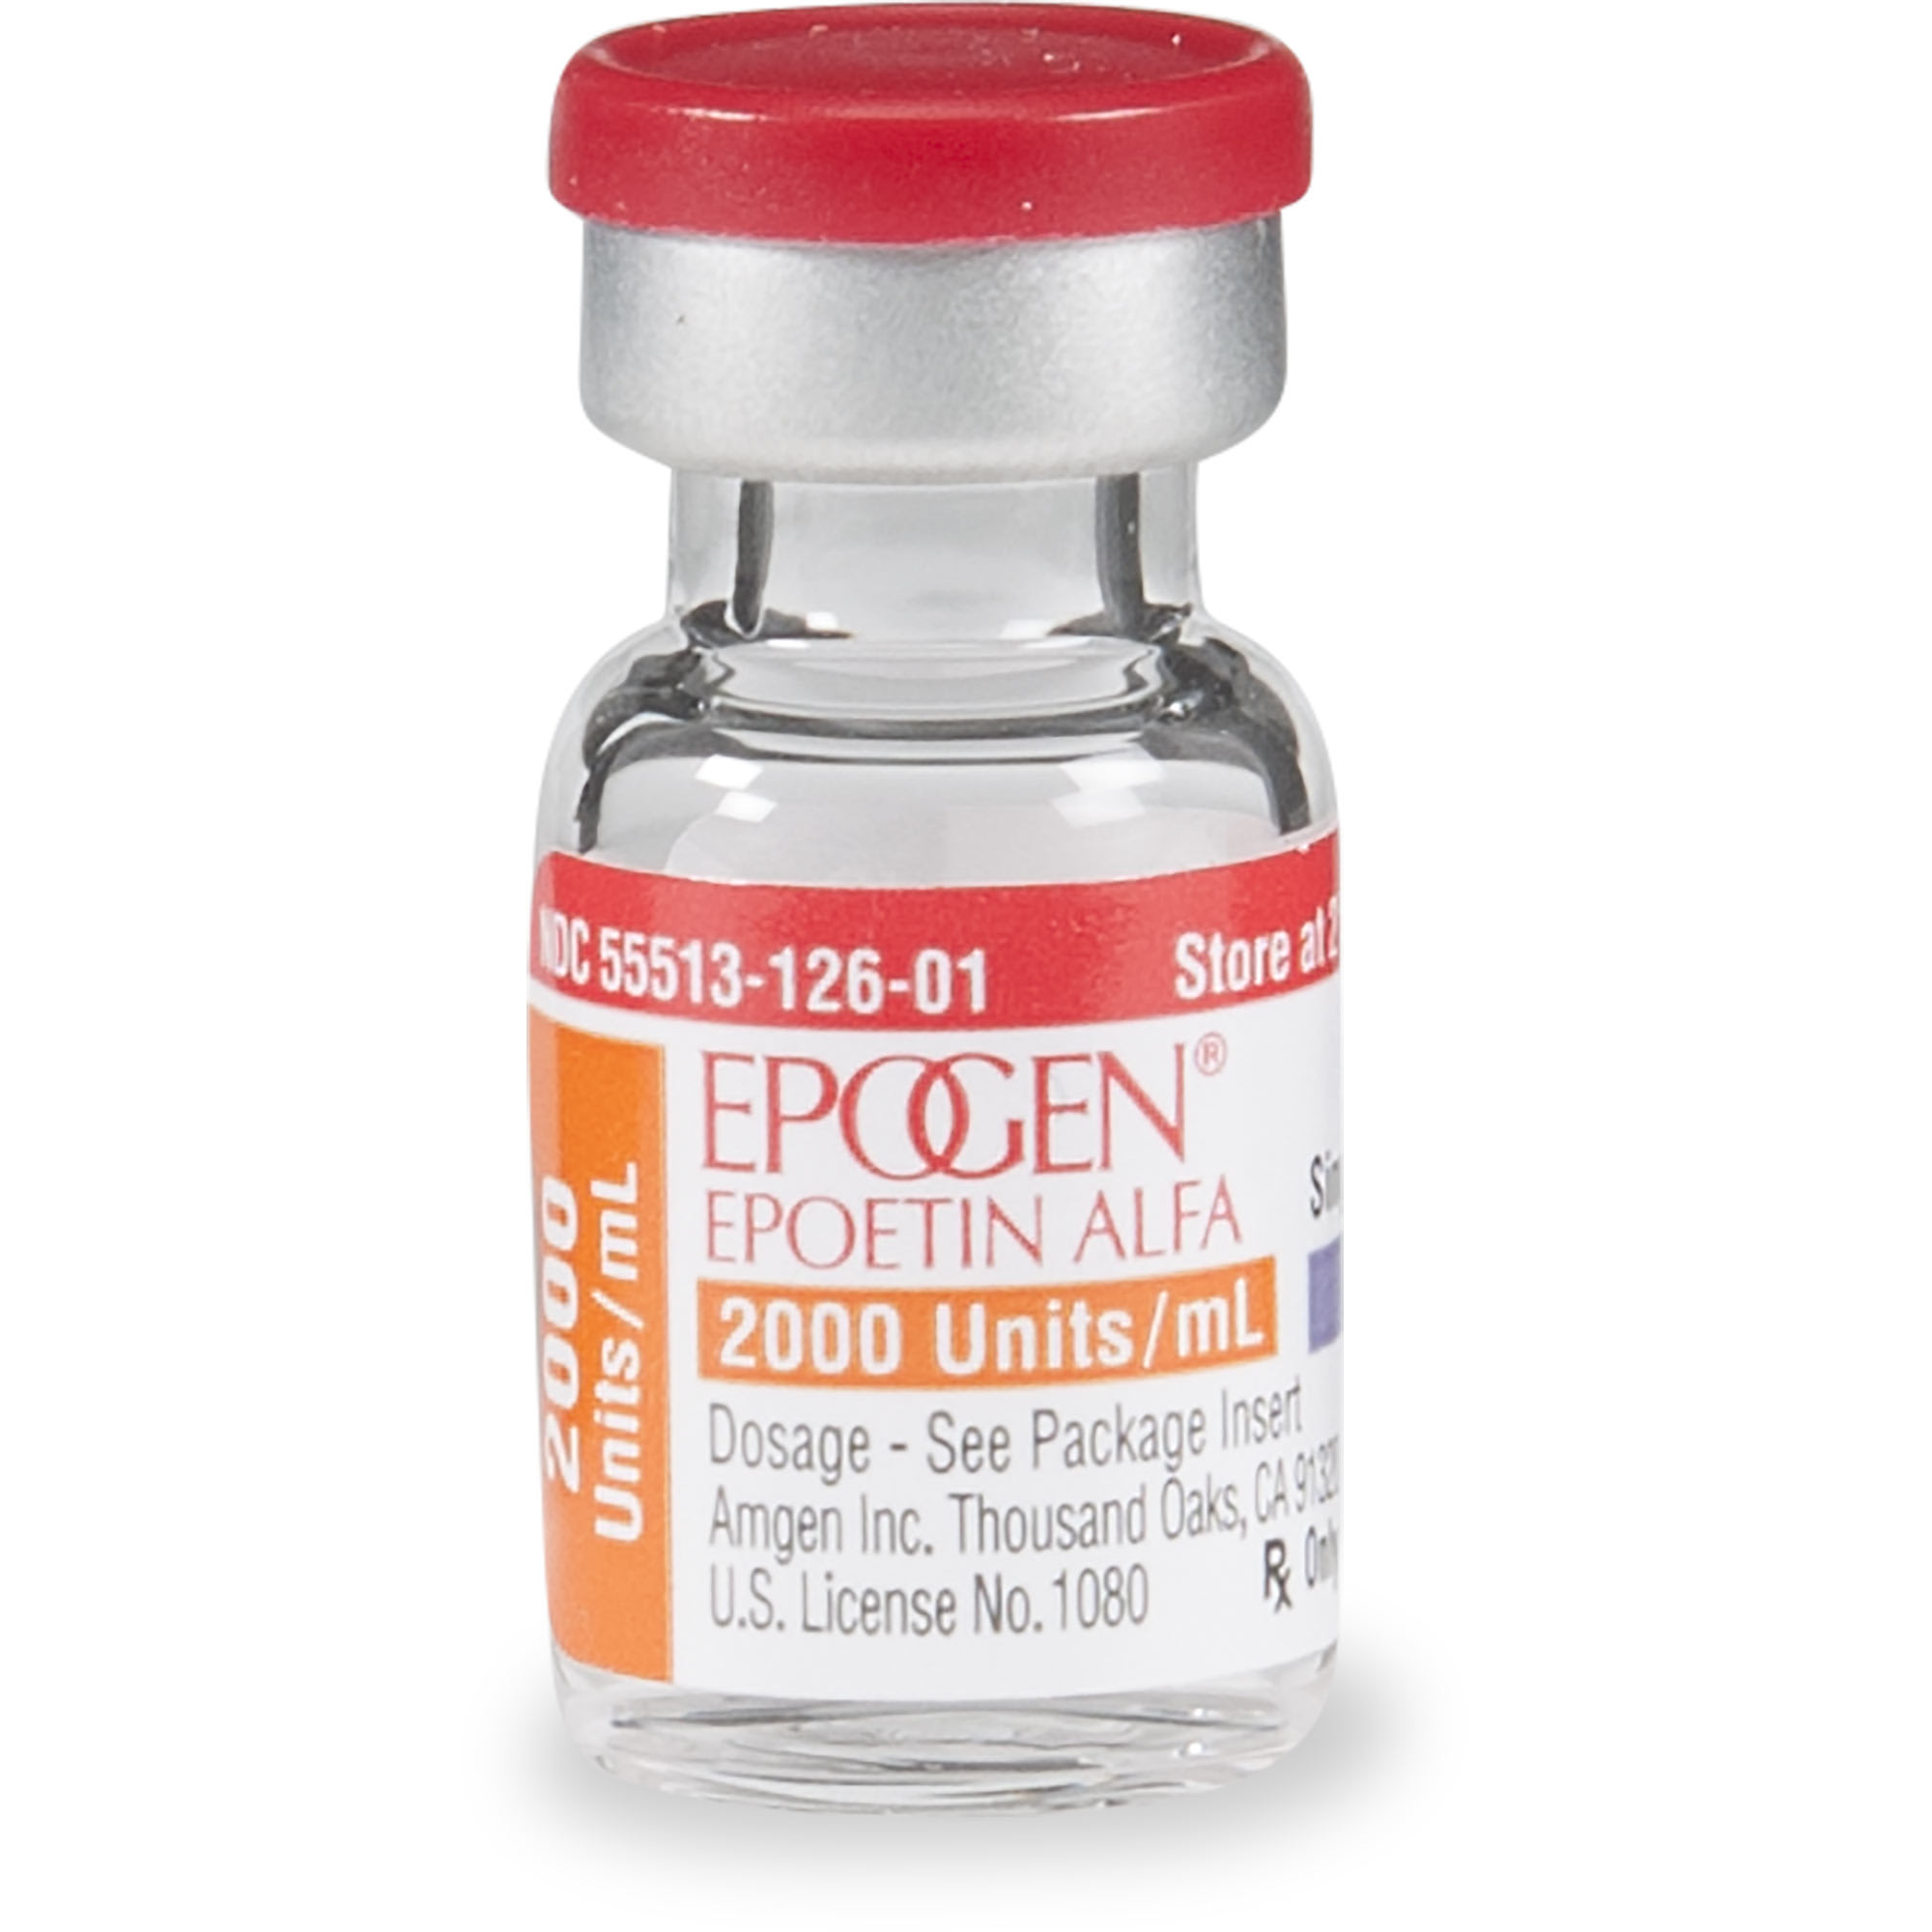 epogen-injectable-solution-1-ml-vial-petco